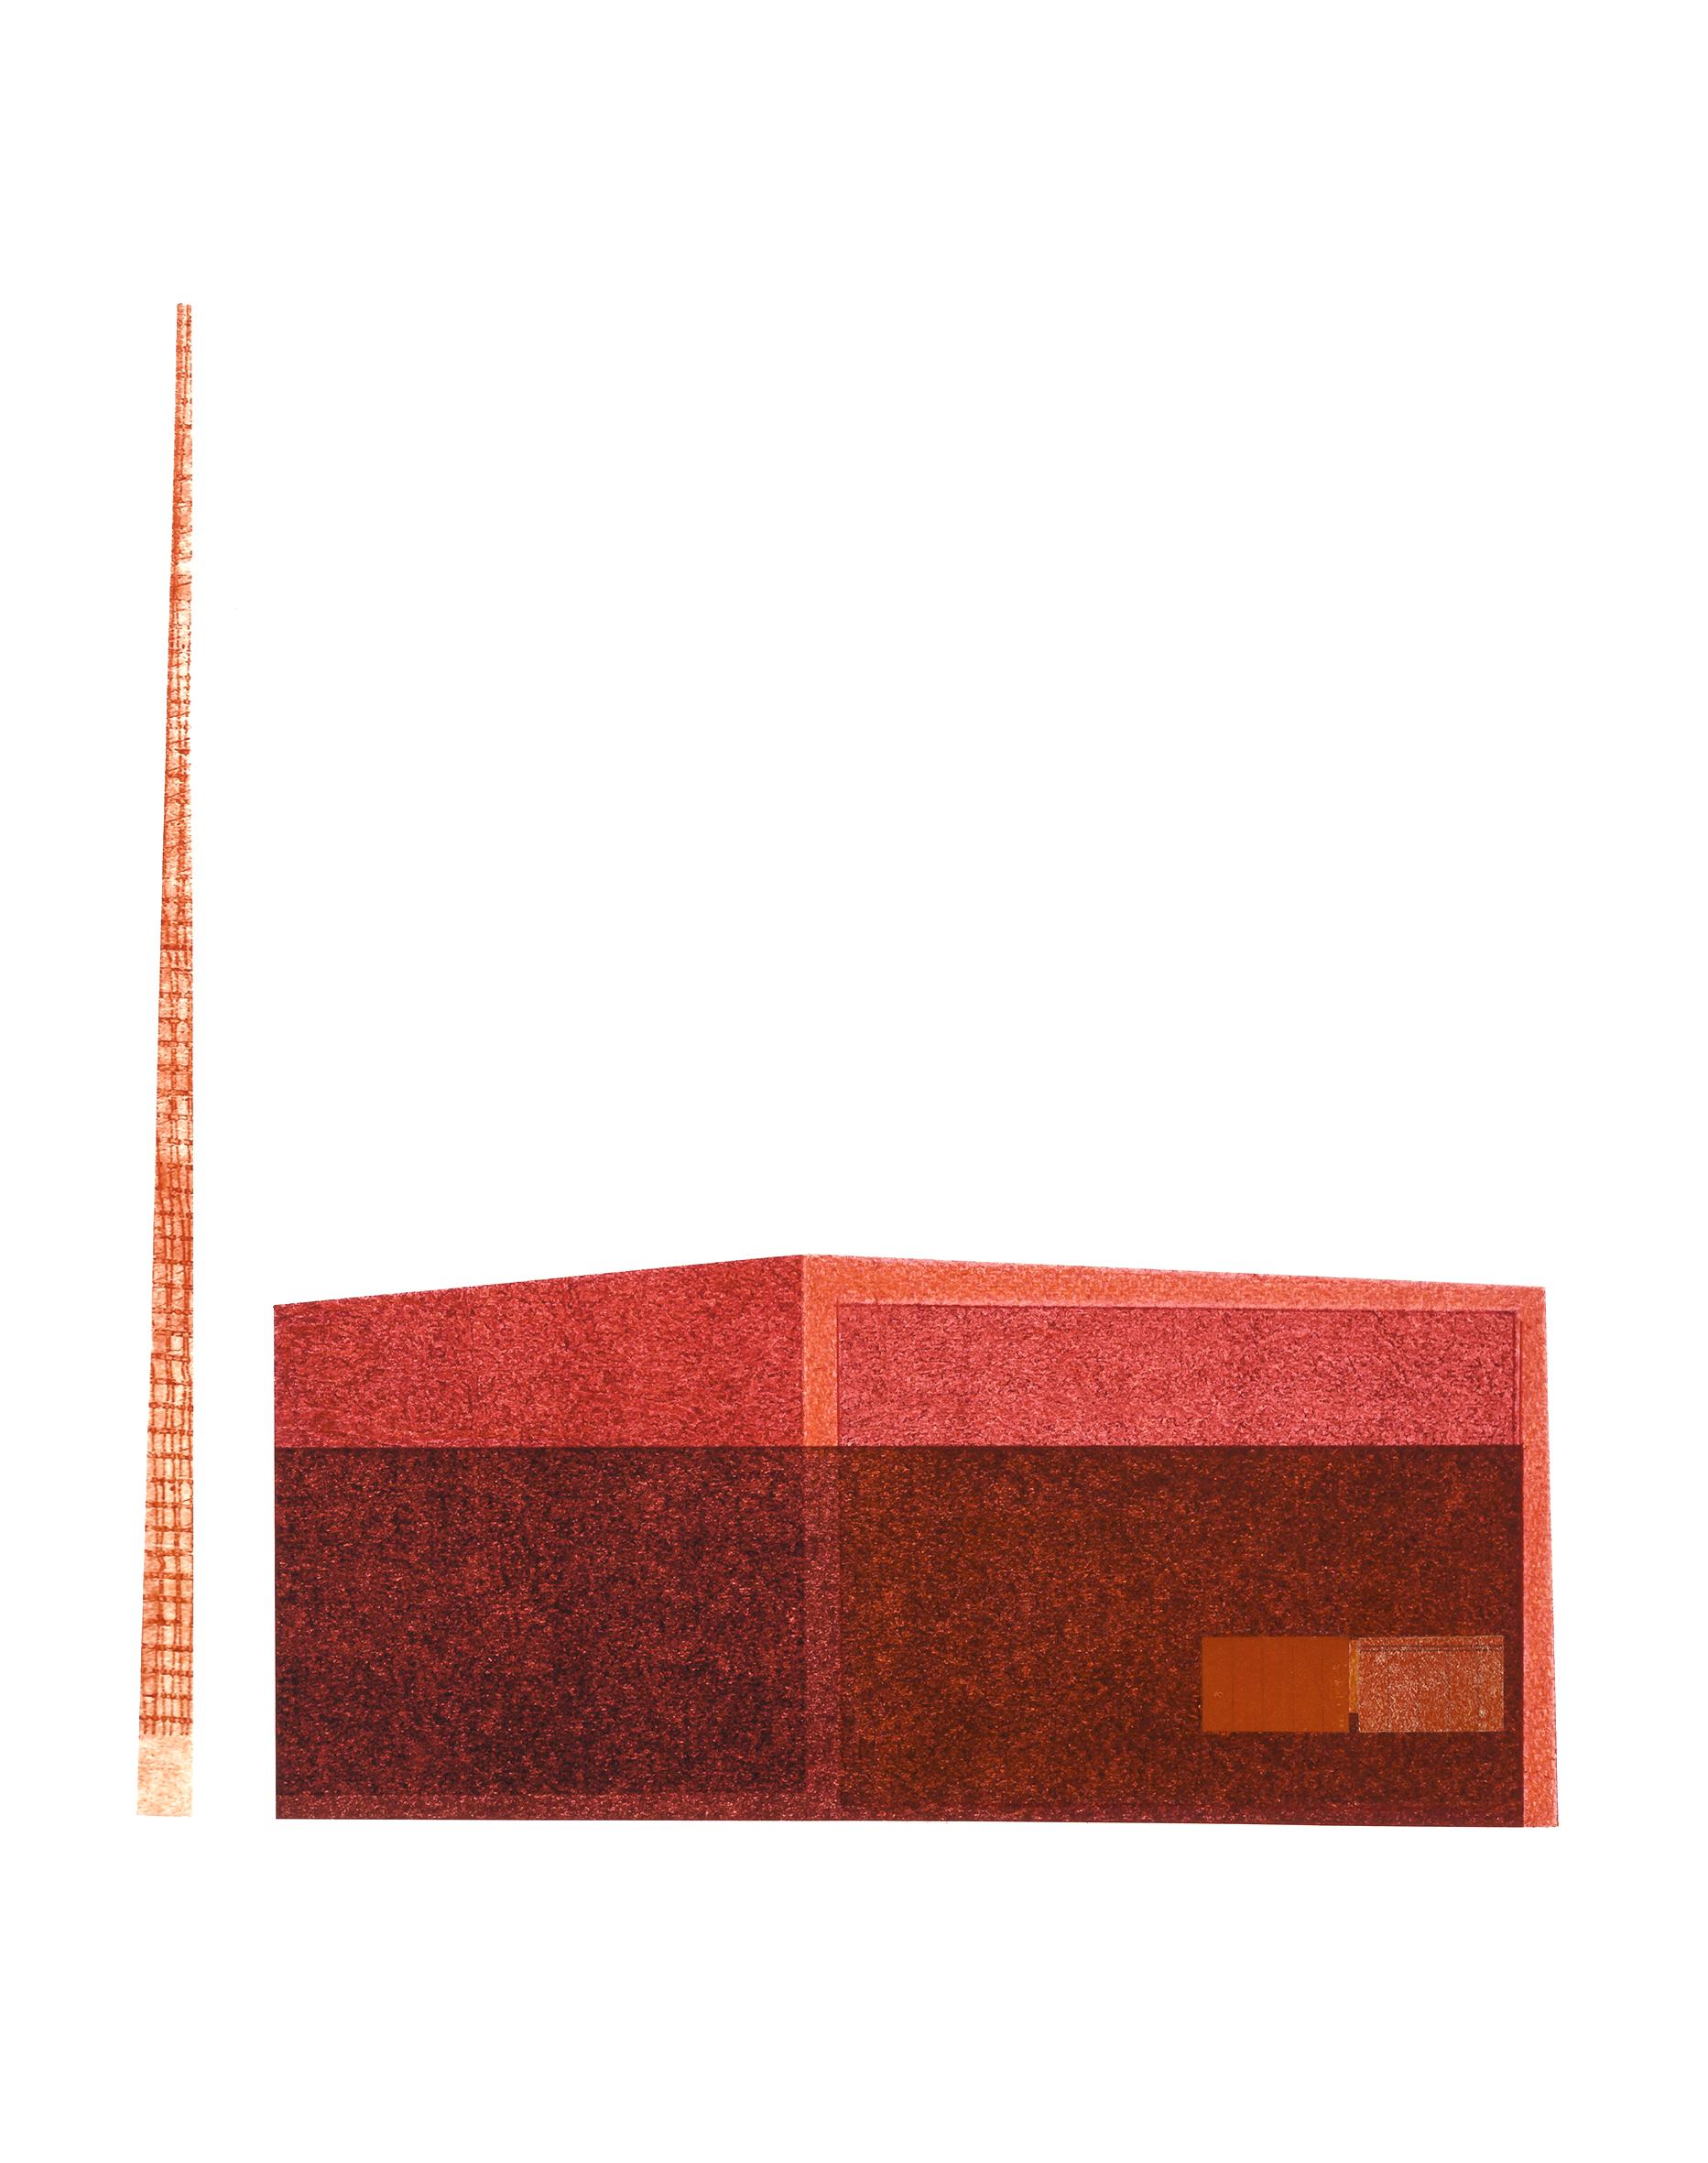 Abstract Print Agathe Bouton - Power Station : collage d'architecture urbaine moderniste sur monoimpression en rouge, encadré